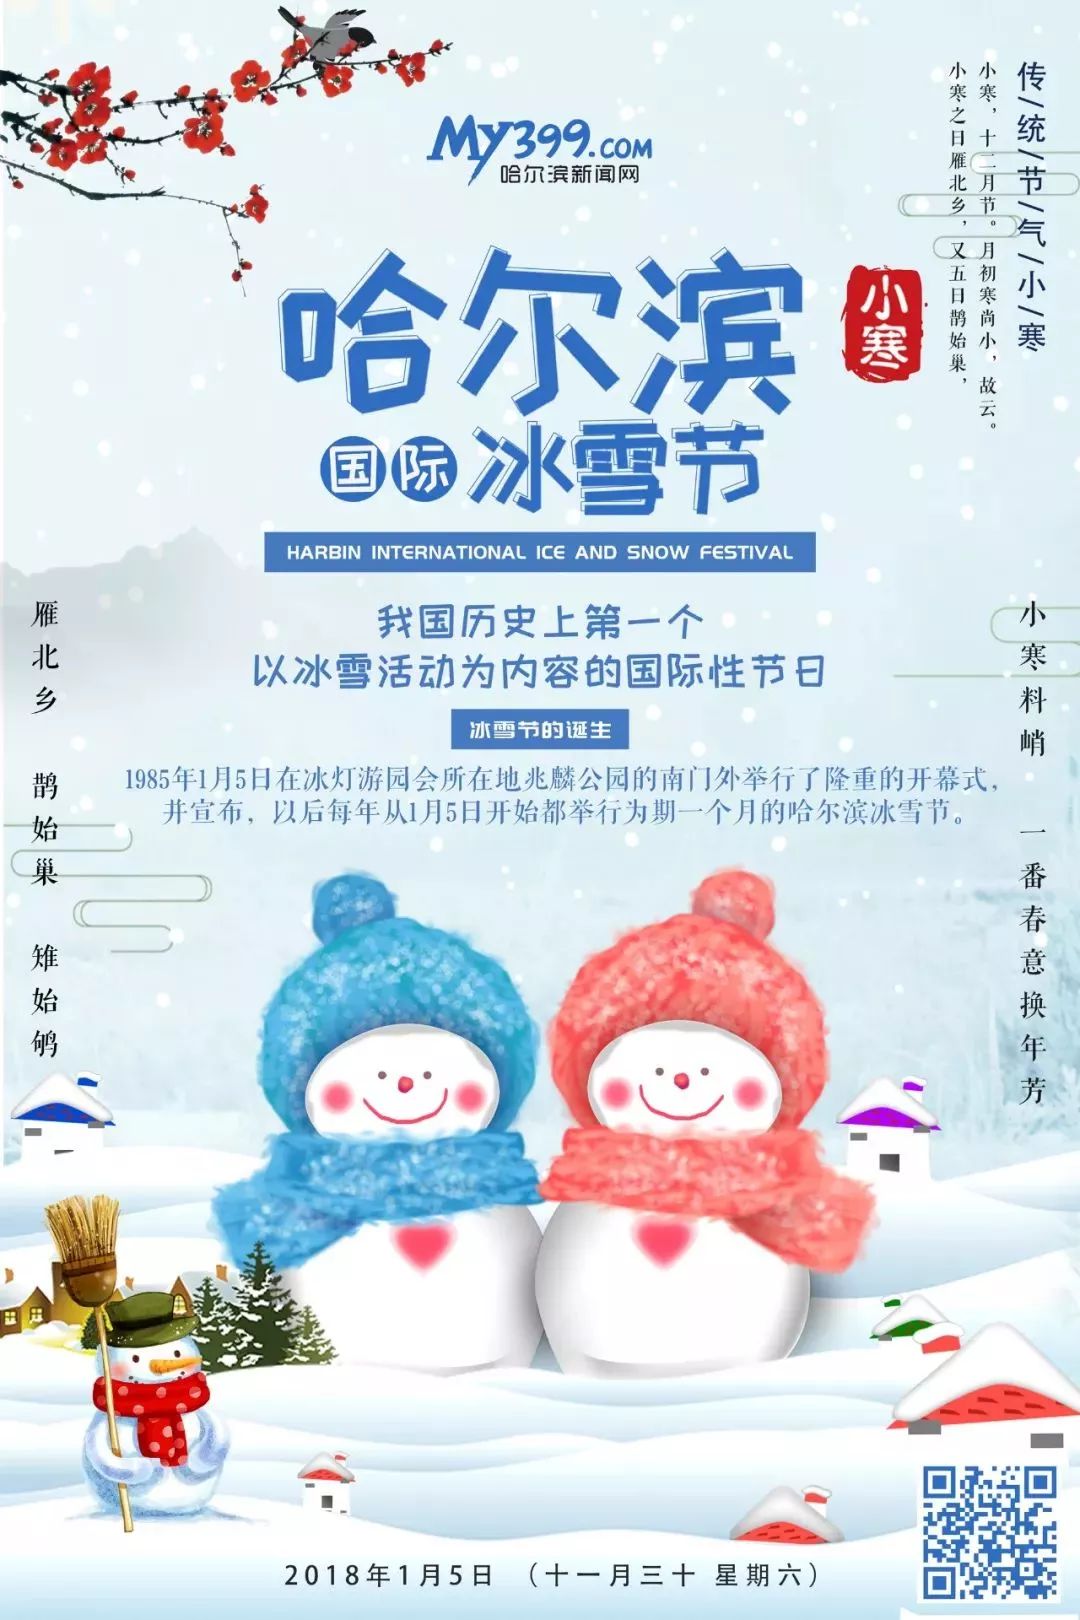 冰雪节彰显国际风范欢乐季打造惠民节庆第35届中国哈尔滨国际冰雪节